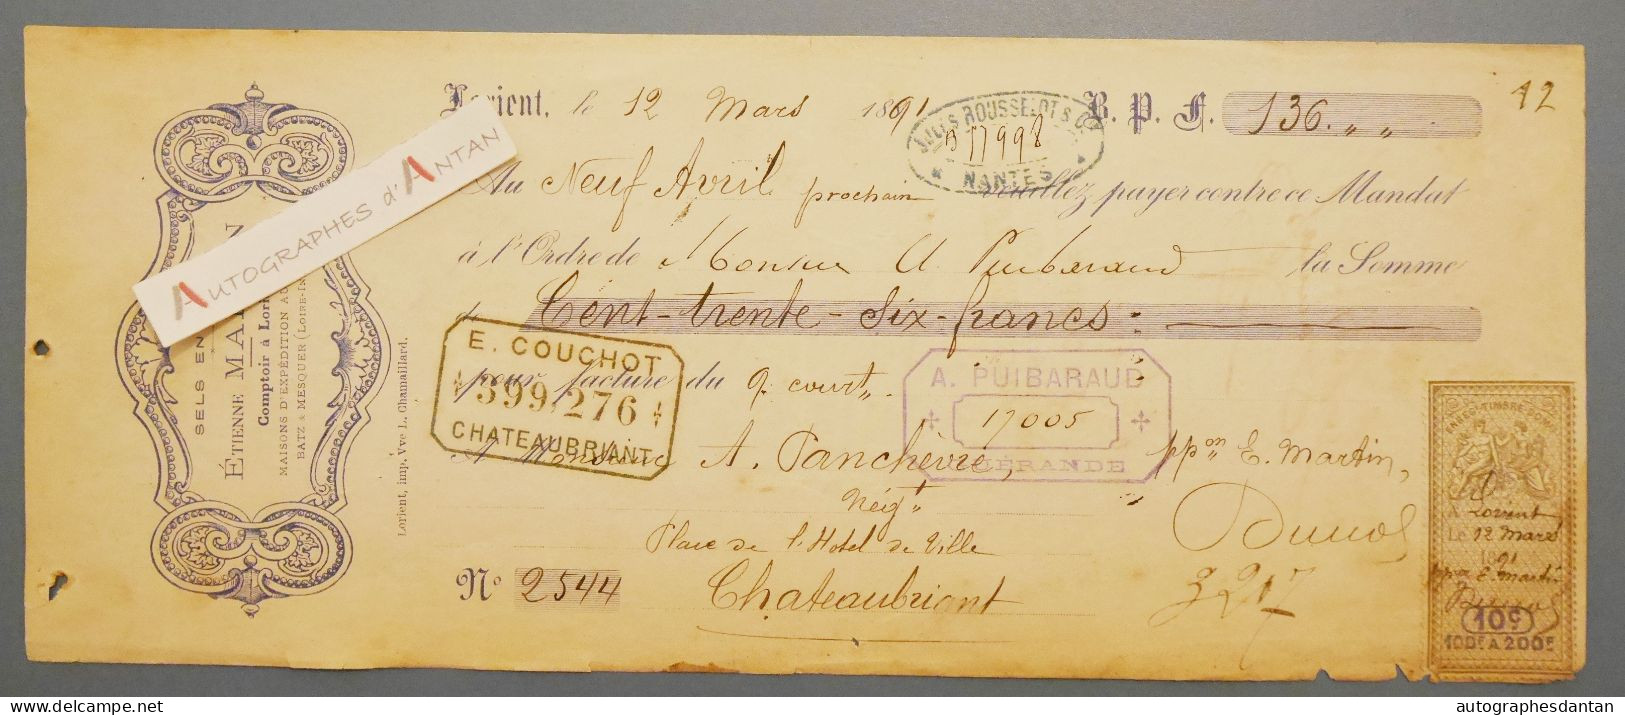 ● Lorient 1891 Etienne MARTIN Sels En Gros - Panchevre Négociant à Chateaubriant - Rare Mandat Lettre De Change - Bills Of Exchange